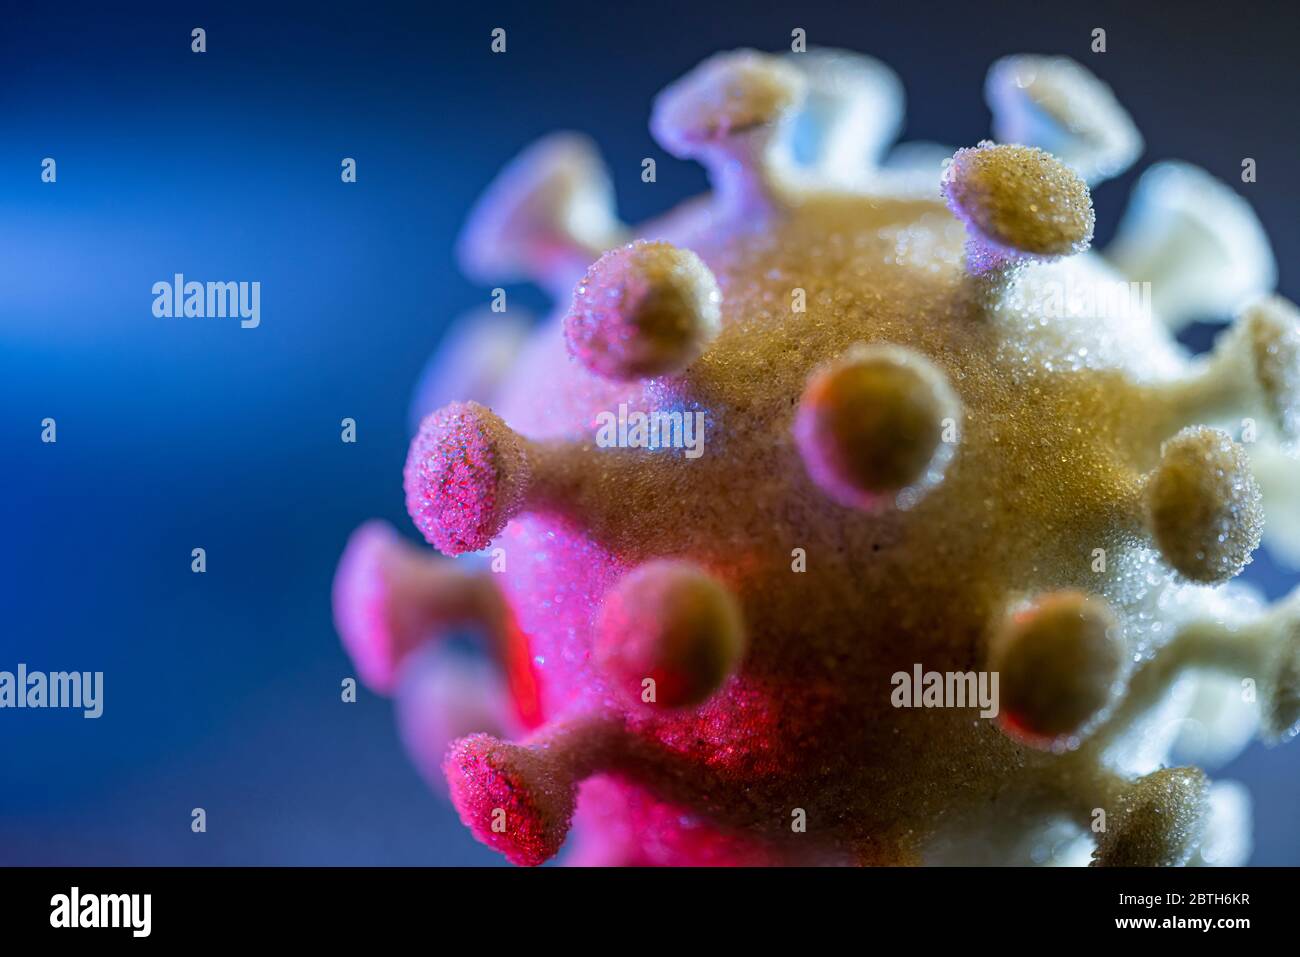 dettaglio di un colorato virus simbolico illuminato nel buio posteriore Foto Stock